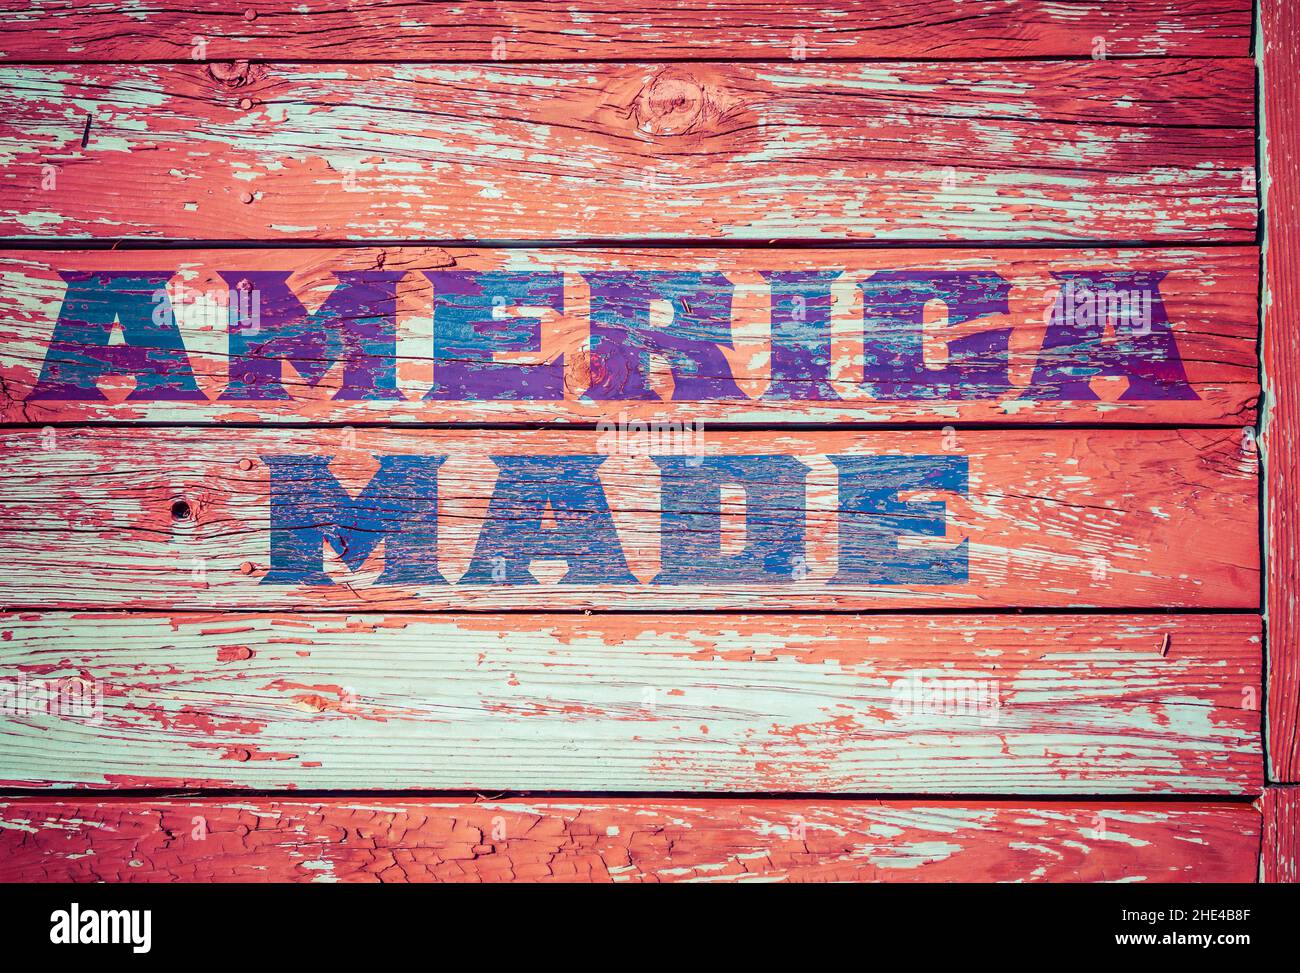 Segno 'American made' vecchio legno sfondo texture peeling vernice rossa Foto Stock